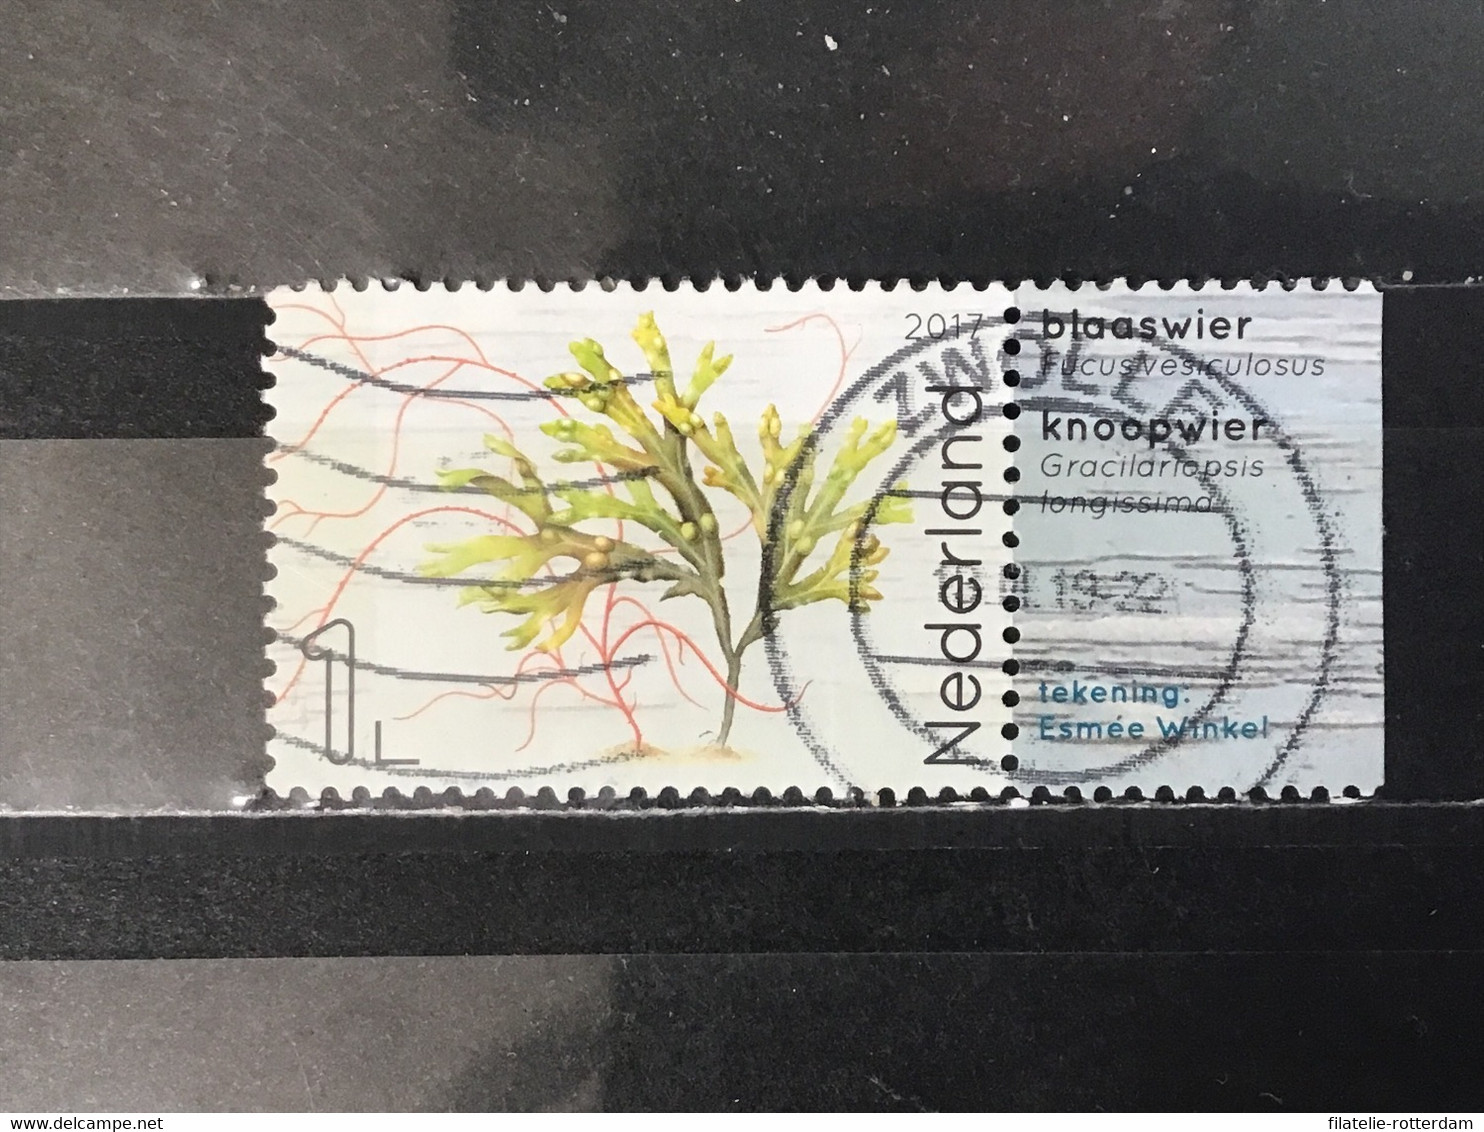 Nederland / The Netherlands - Leven In De Noordzee 2017 - Used Stamps